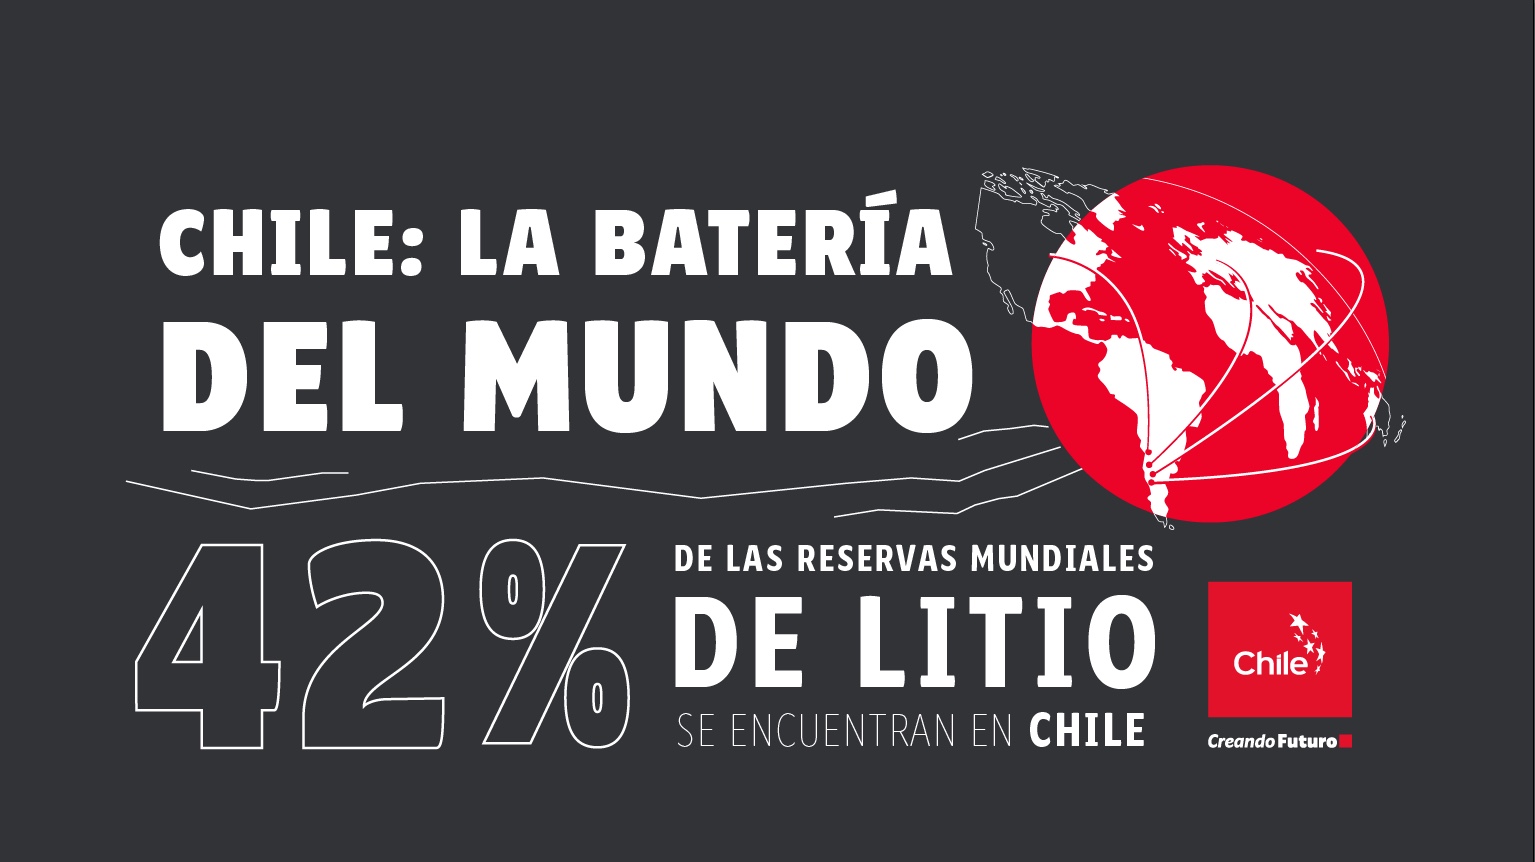 La batería del mundo / The world's battery / A bateria do mundo | Toolkit | Marca Chile